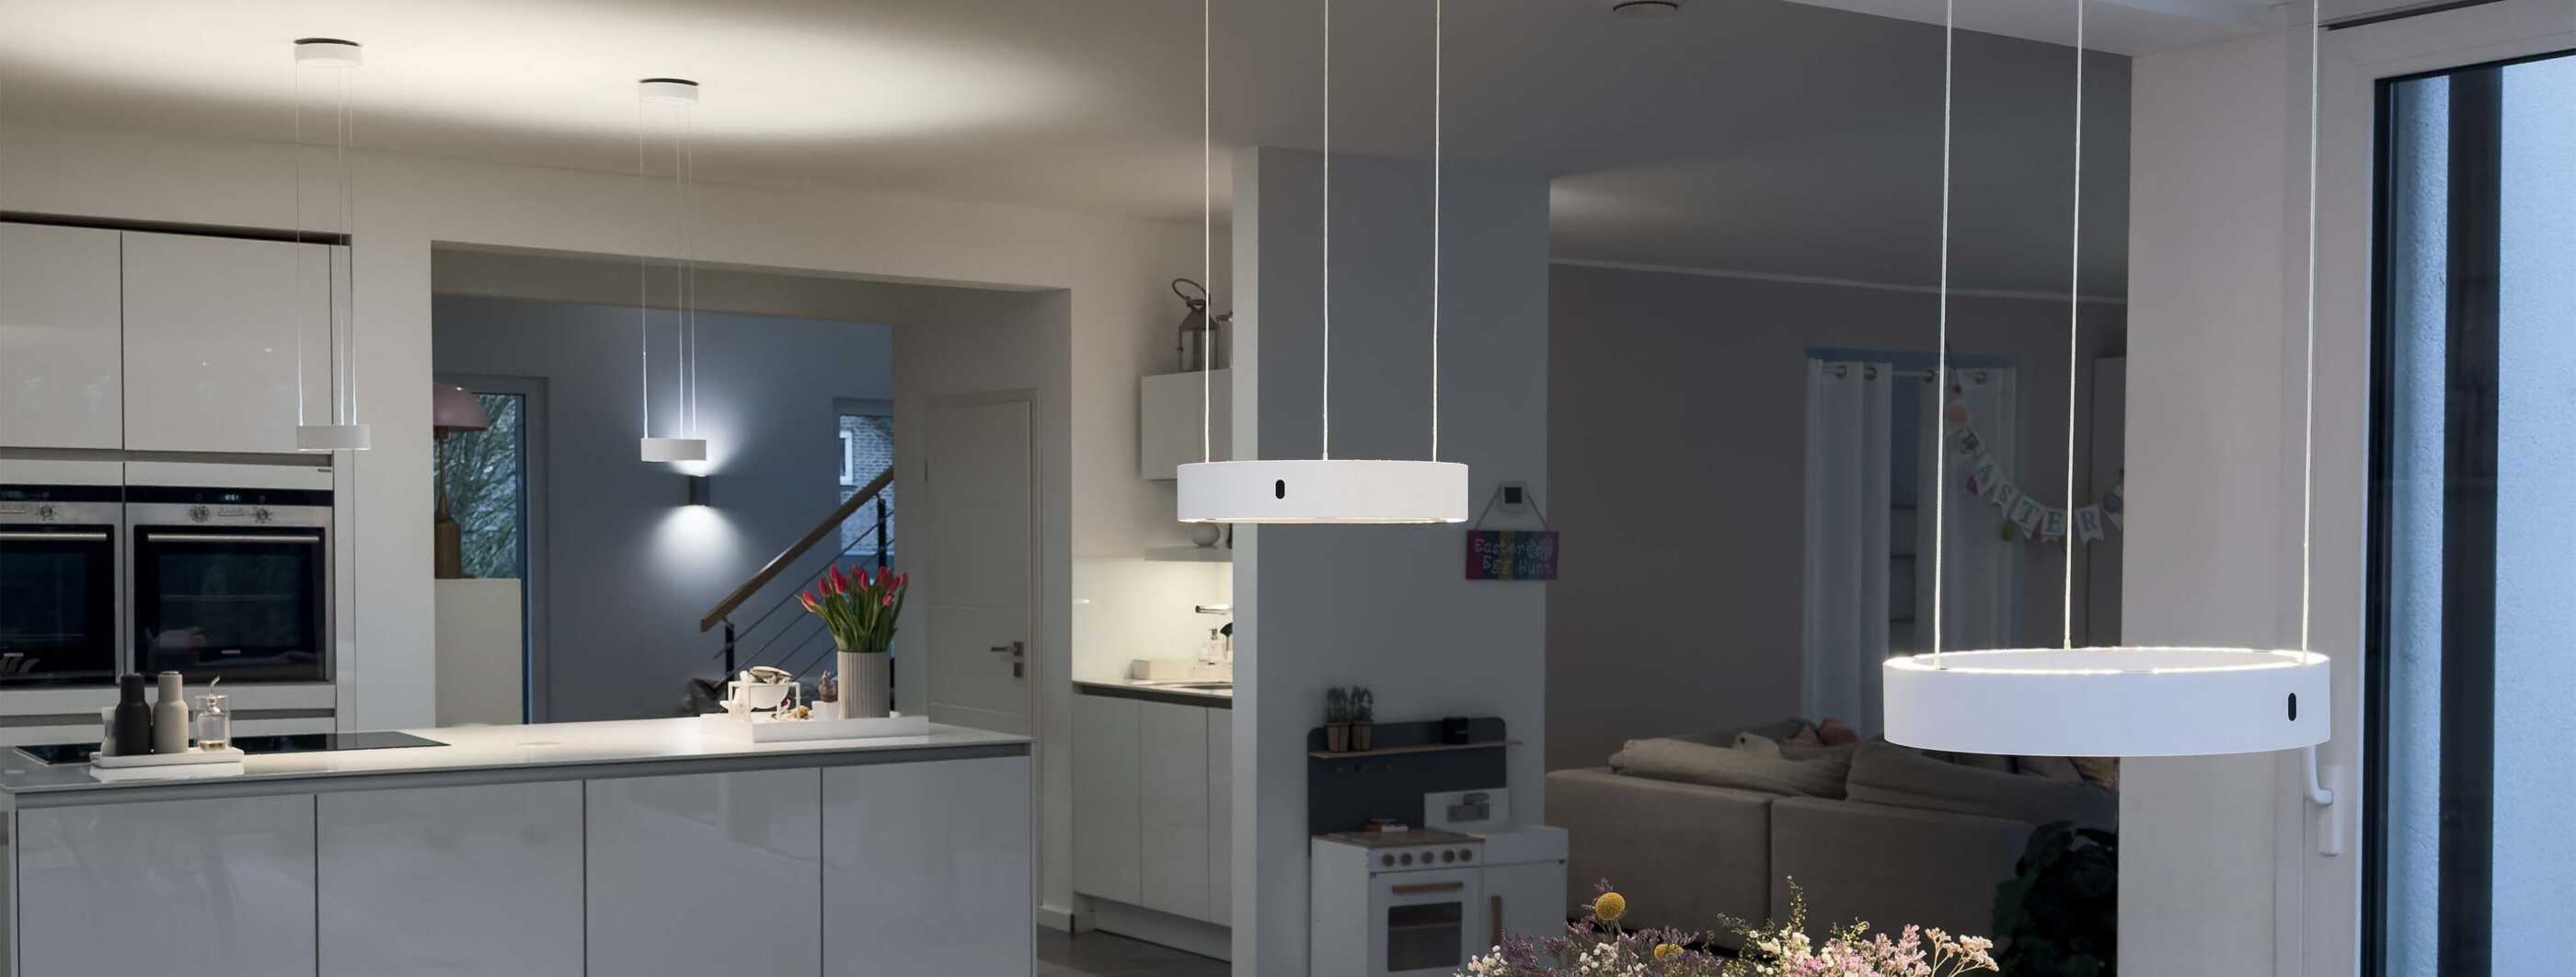 Über einem Esstisch hängen zwei weiße Pendelleuchten von CHRISTOPH (c.Space pendant), im Hintergrund ist eine offene Küche zu sehen, in der die kompakteren c.Pace pendant für gute Beleuchtung sorgen.